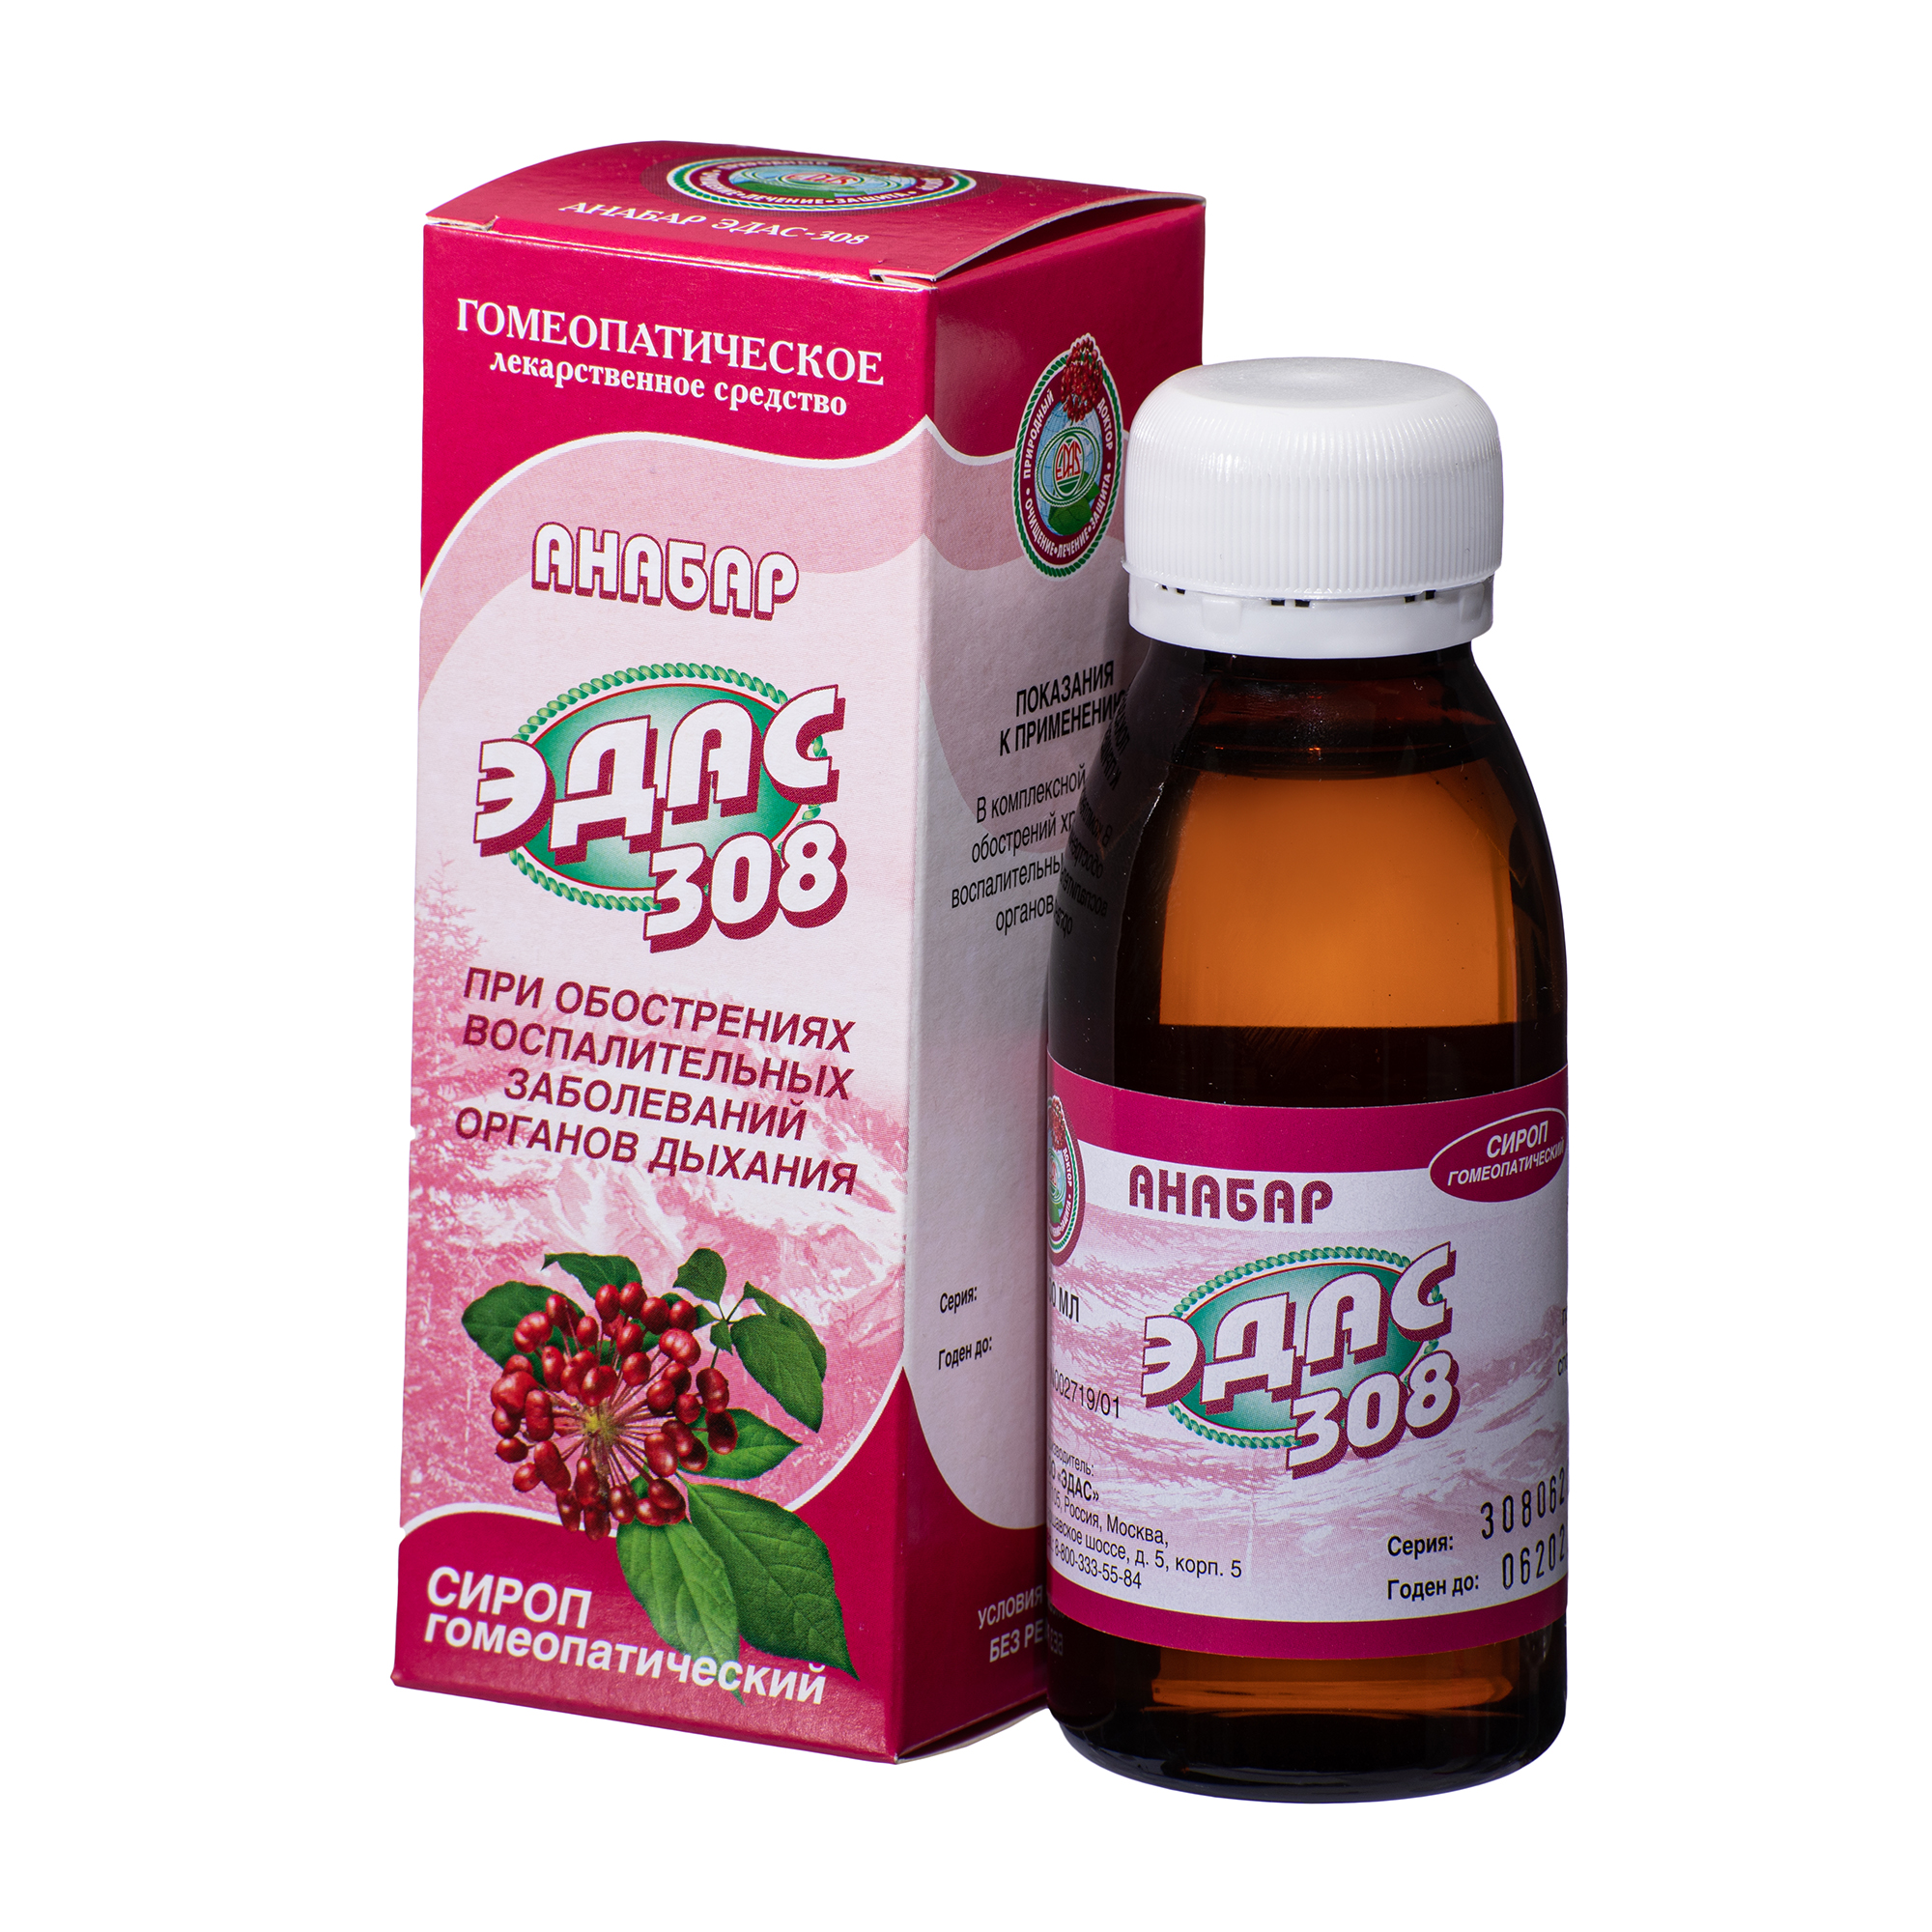 Анабар Эдас-308, для лечения заболеваний органов дыхания, сироп гом. 100 мл эдас 308 анабар сироп гомеопатический 100мл